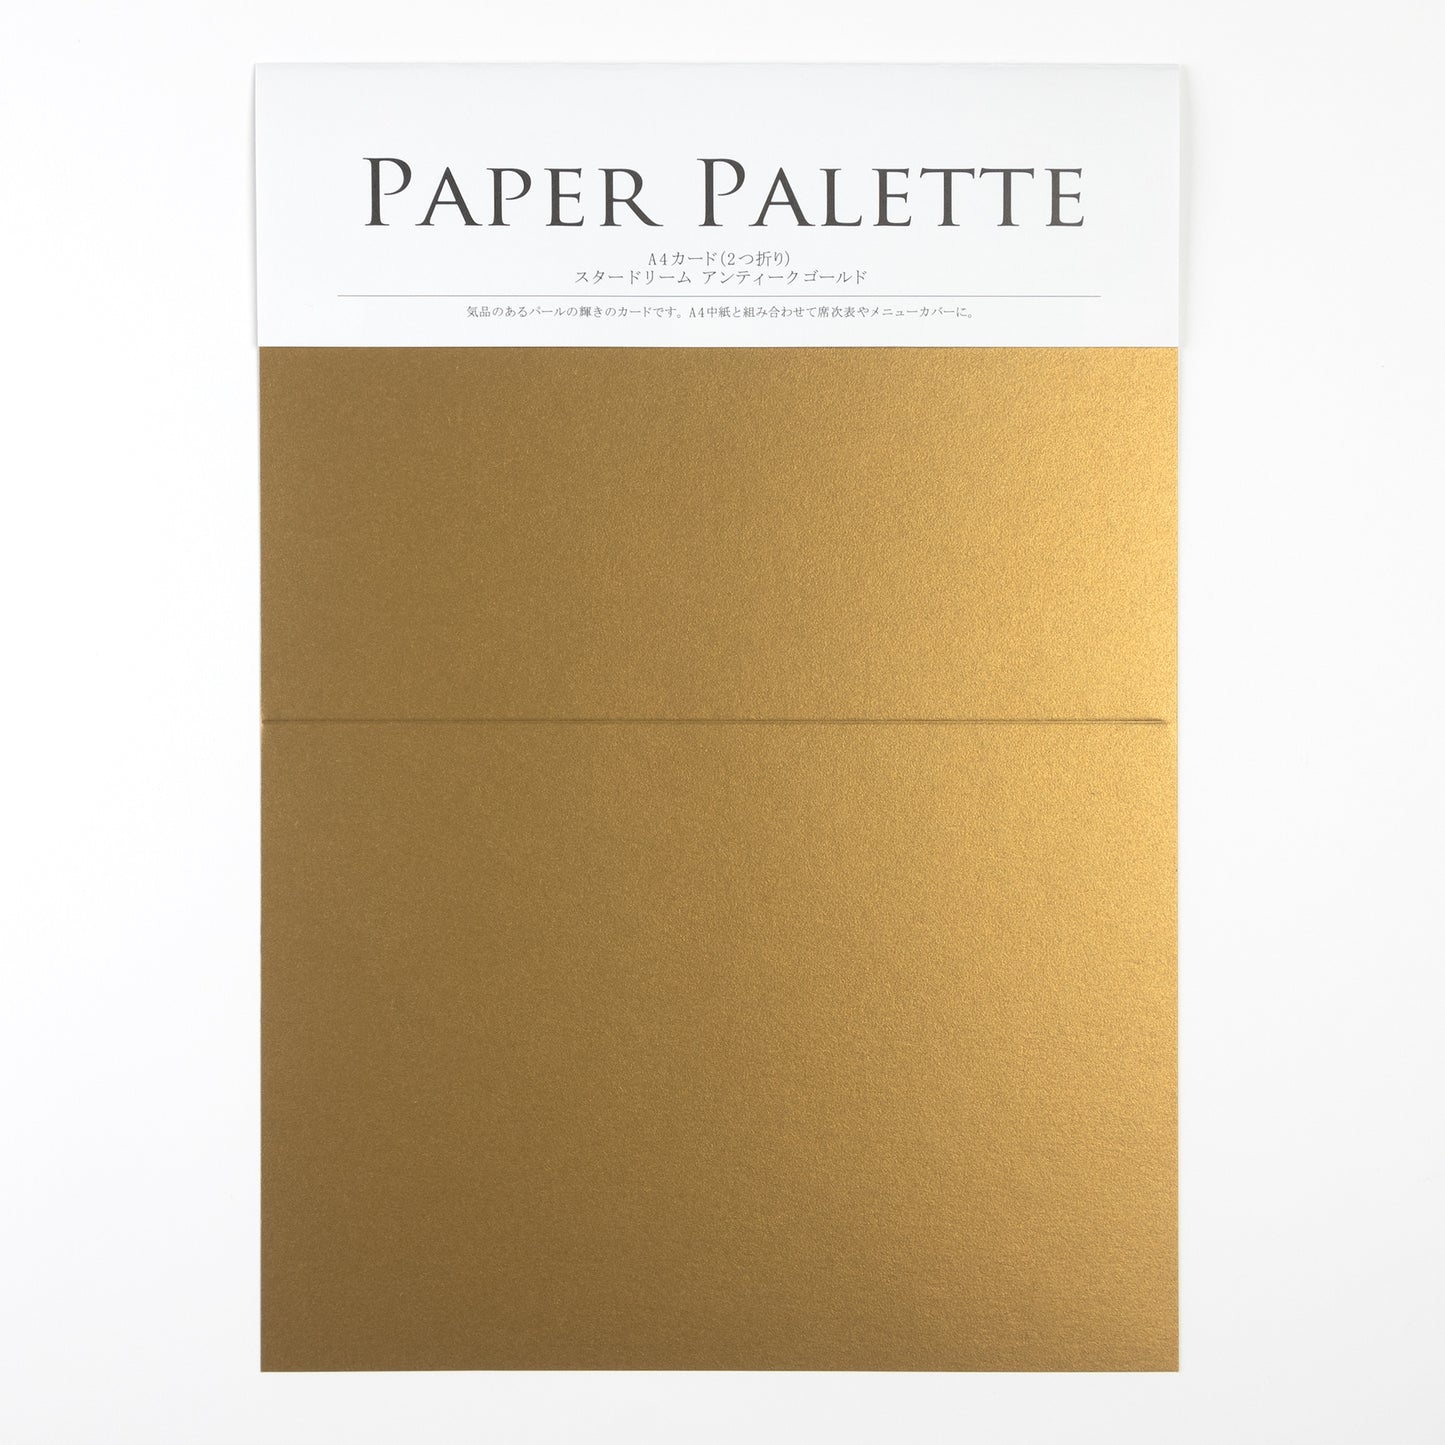 PAPER PALETTE A4 スタードリーム アンティークゴールド